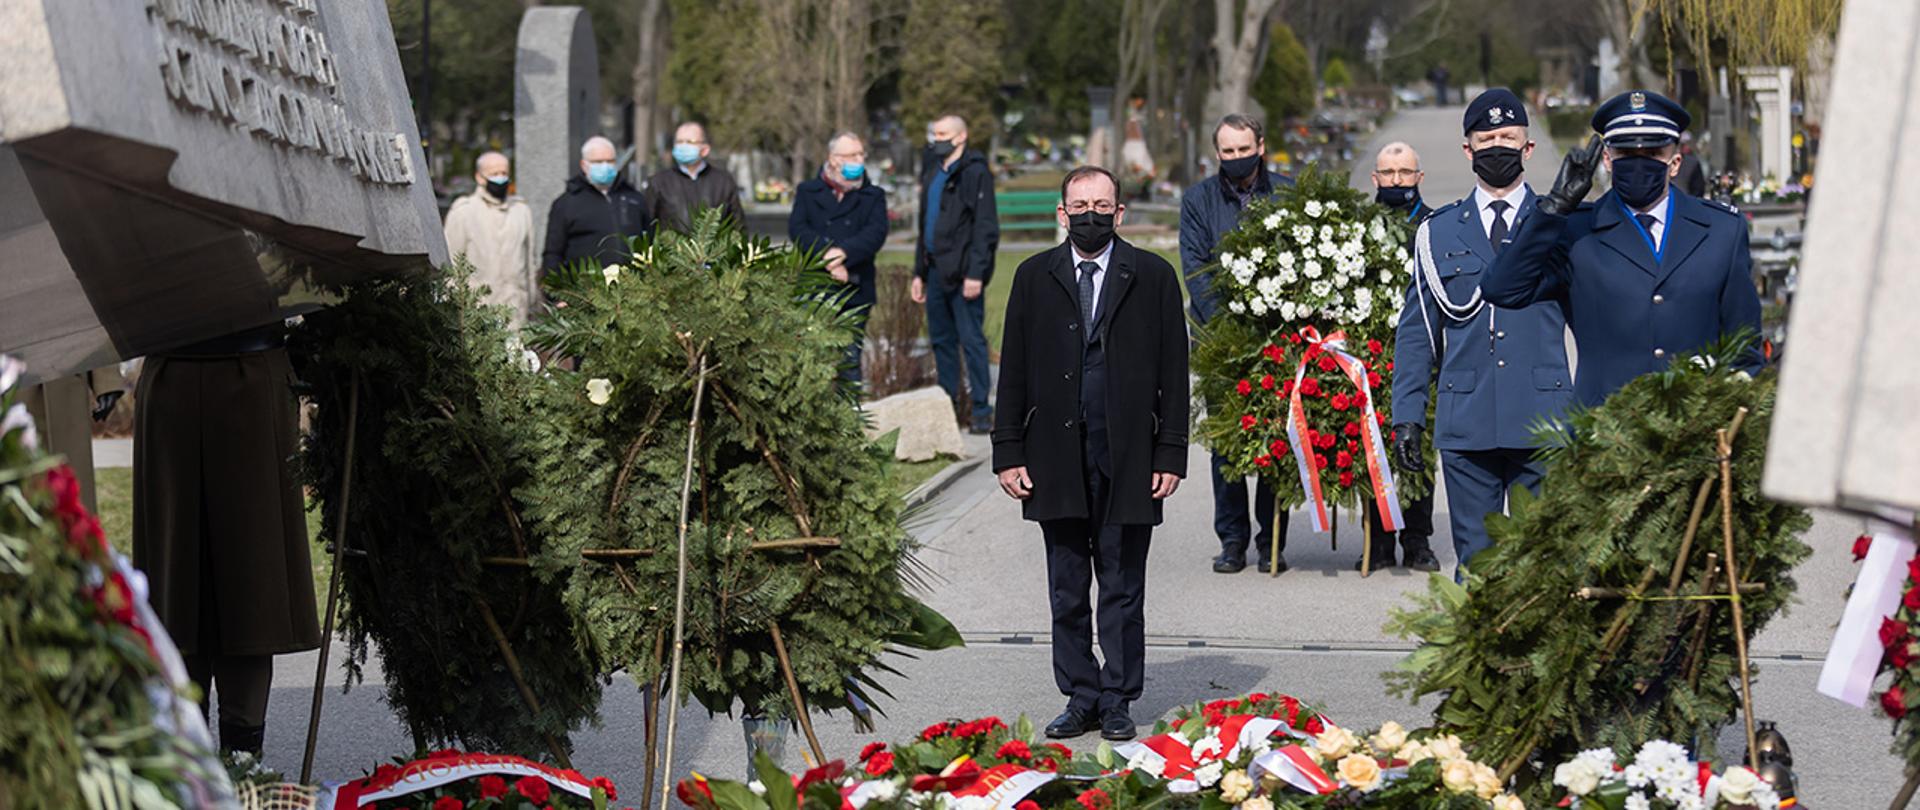 Na zdjęciu widać ministra Mariusza Kamińskiego składającego wieniec przed pomnikiem ofiar katastrofy smoleńskiej wraz z mjr Pawłem Olszewskim komendantem SOP.